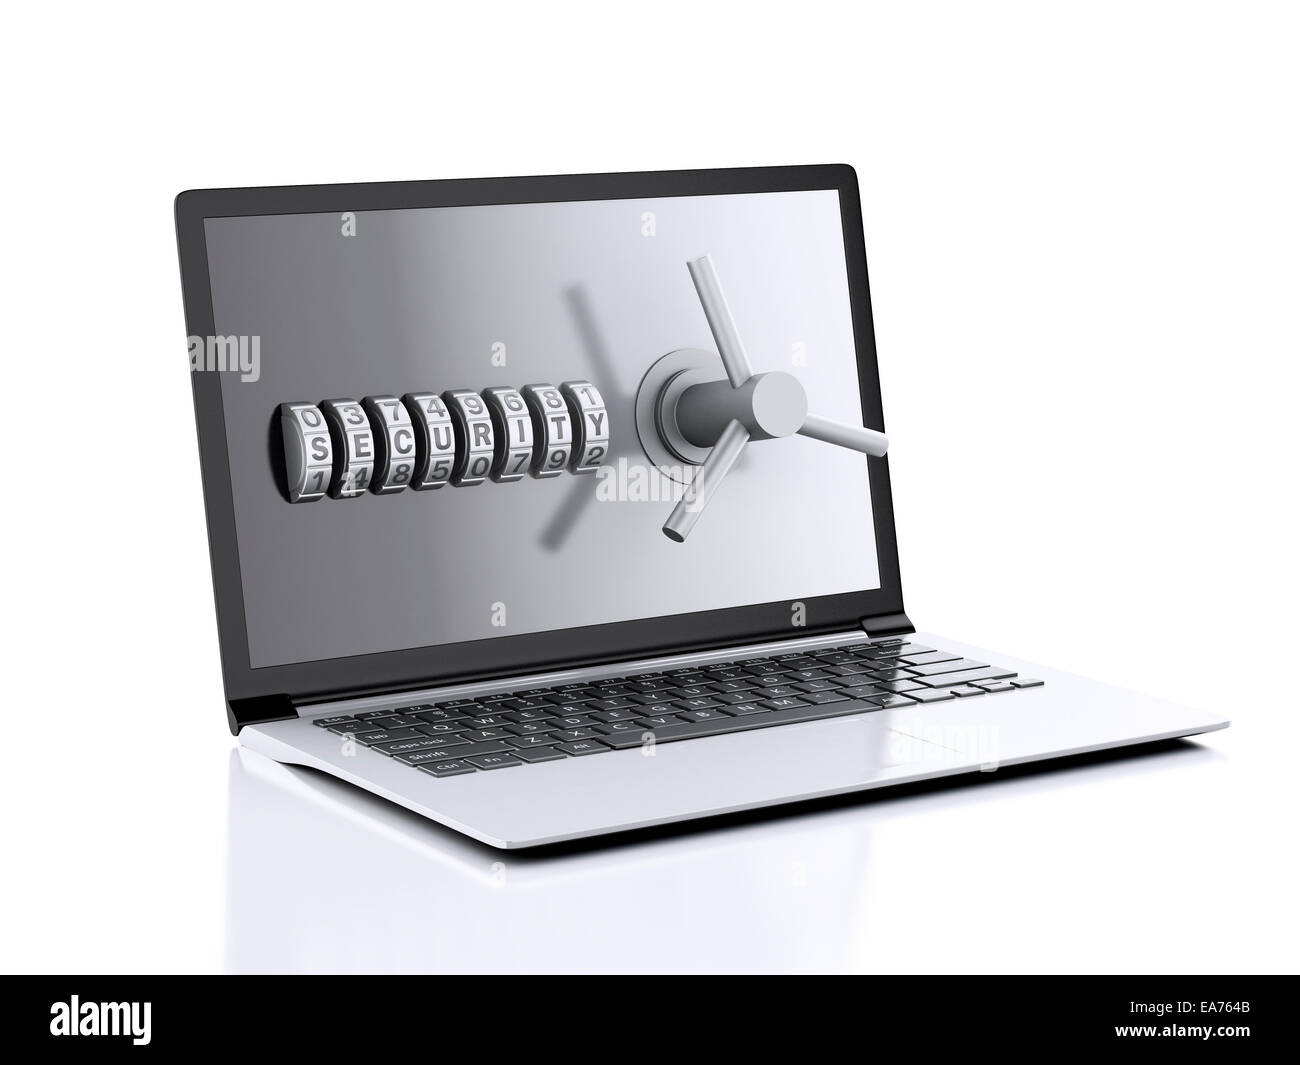 Image de l'ordinateur portable et serrure à combinaison. Concept de sécurité des données. 3d illustration Banque D'Images